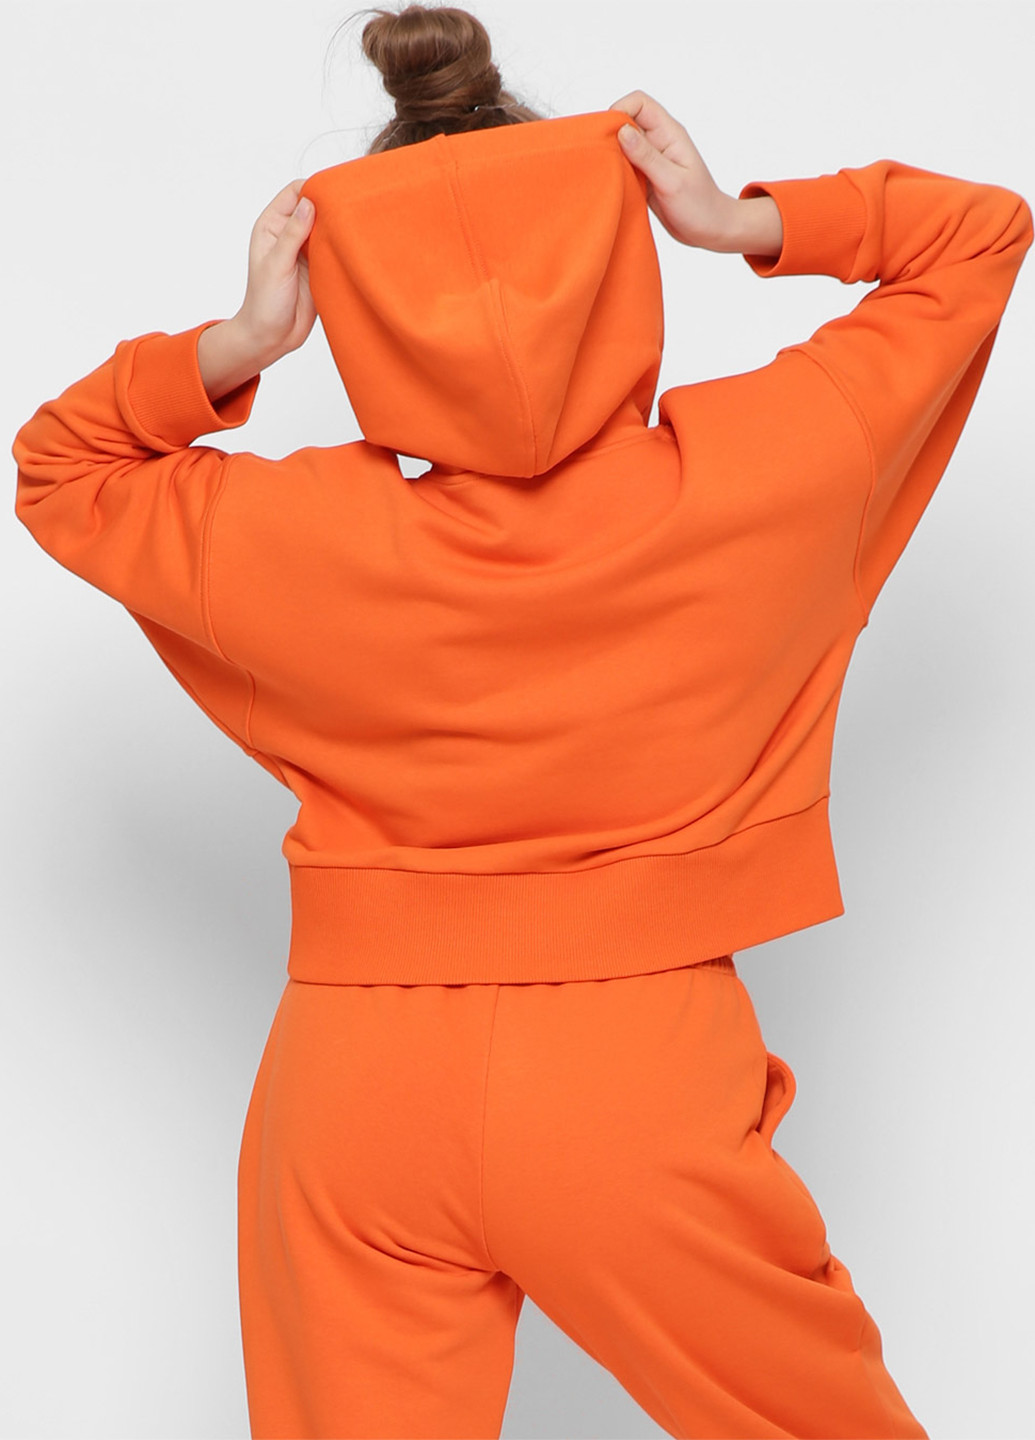 Оранжевые спортивные демисезонные джоггеры брюки Carica